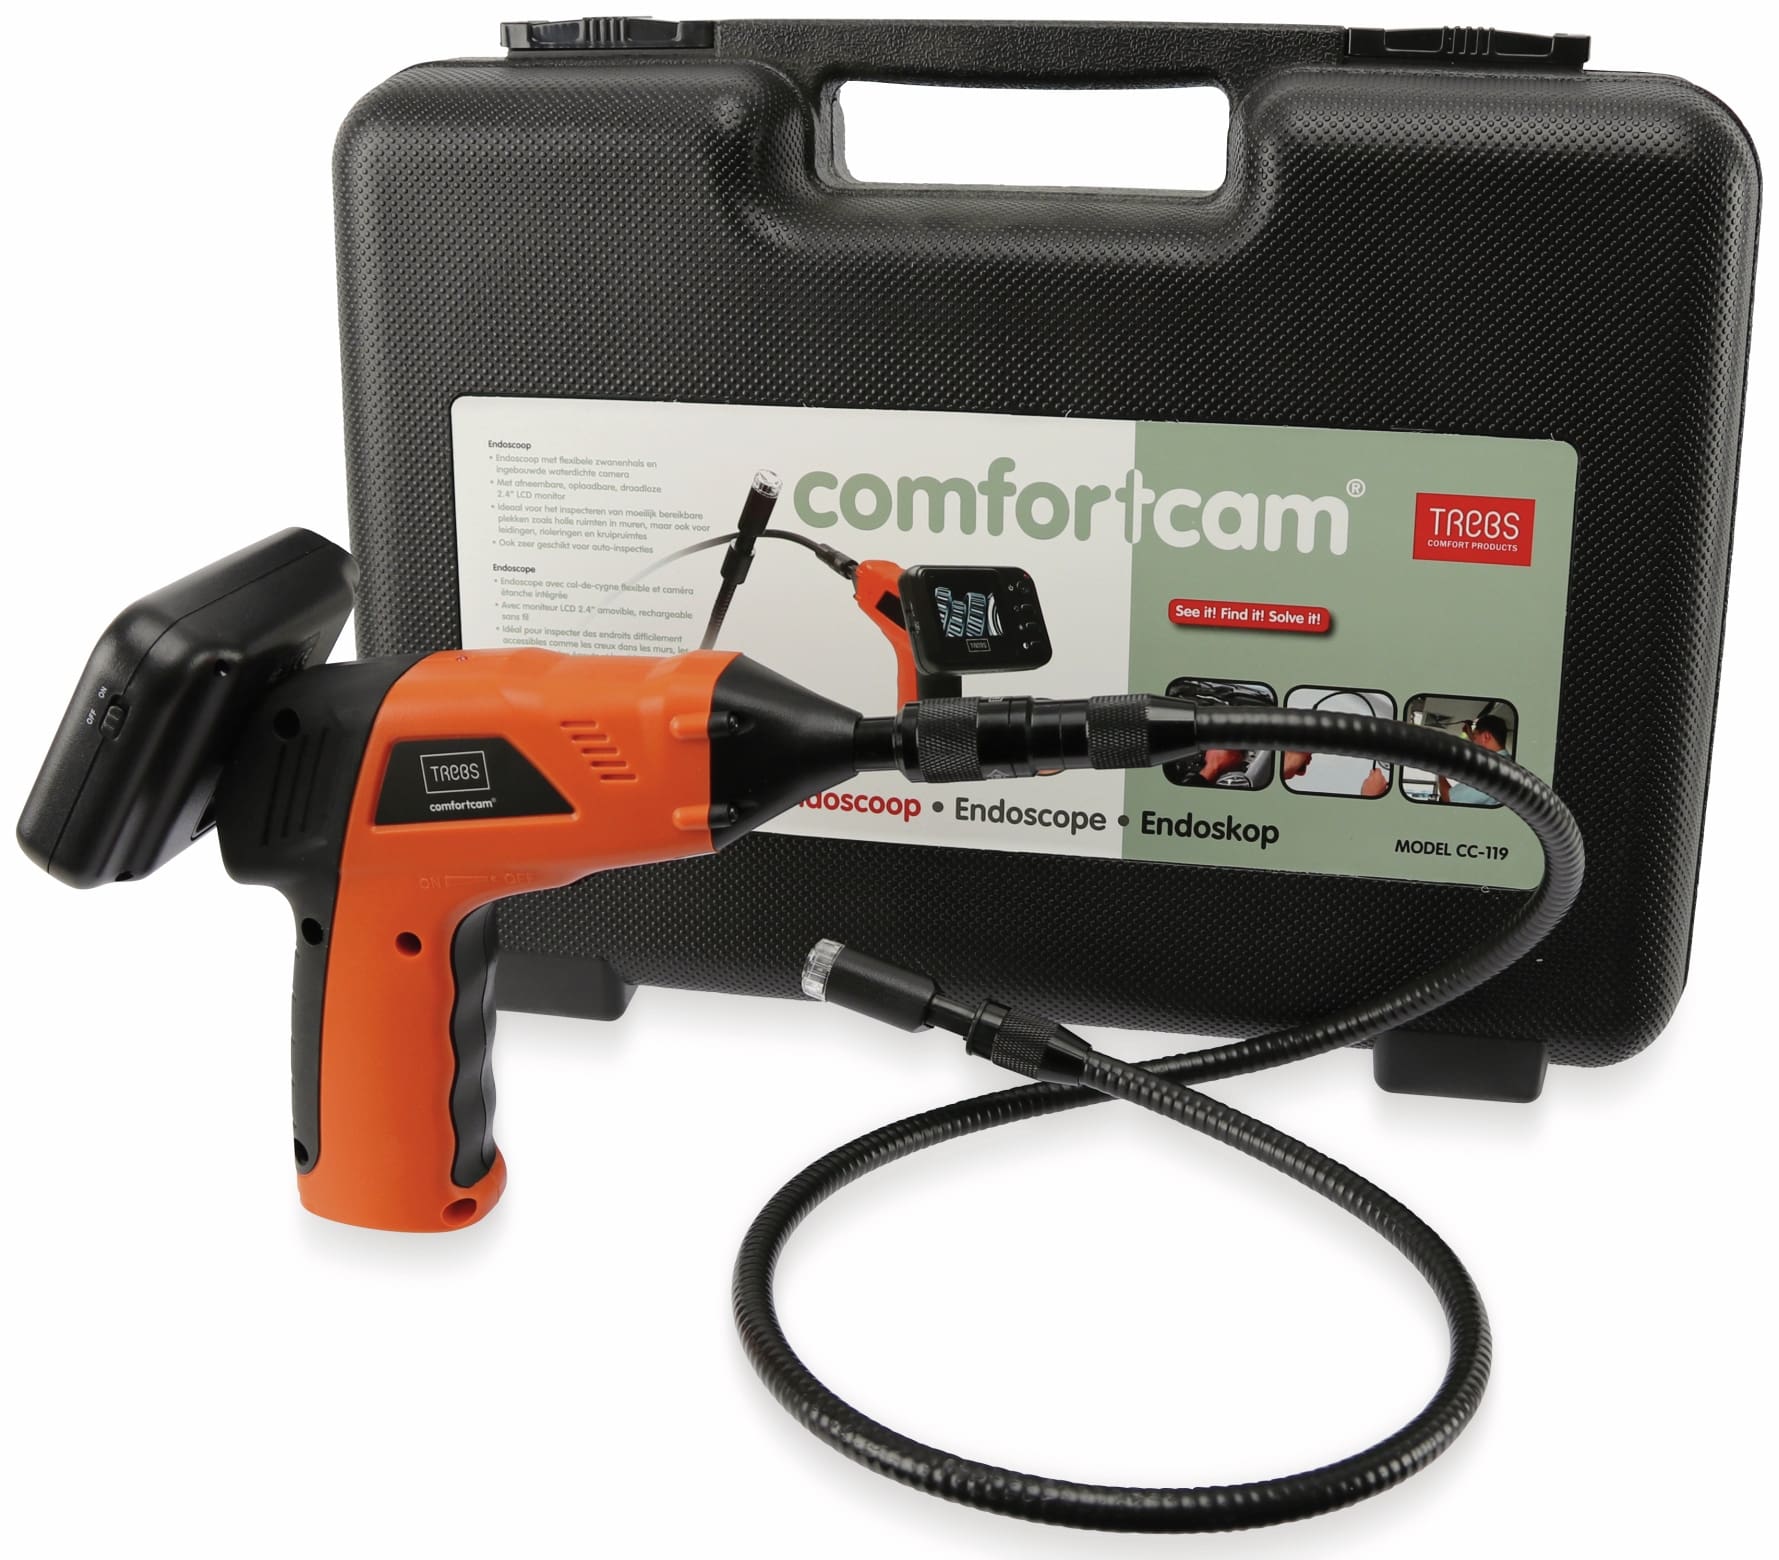 Trebs Endoskop-Kamera comfortcam, CC-119, 2,4 Ghz